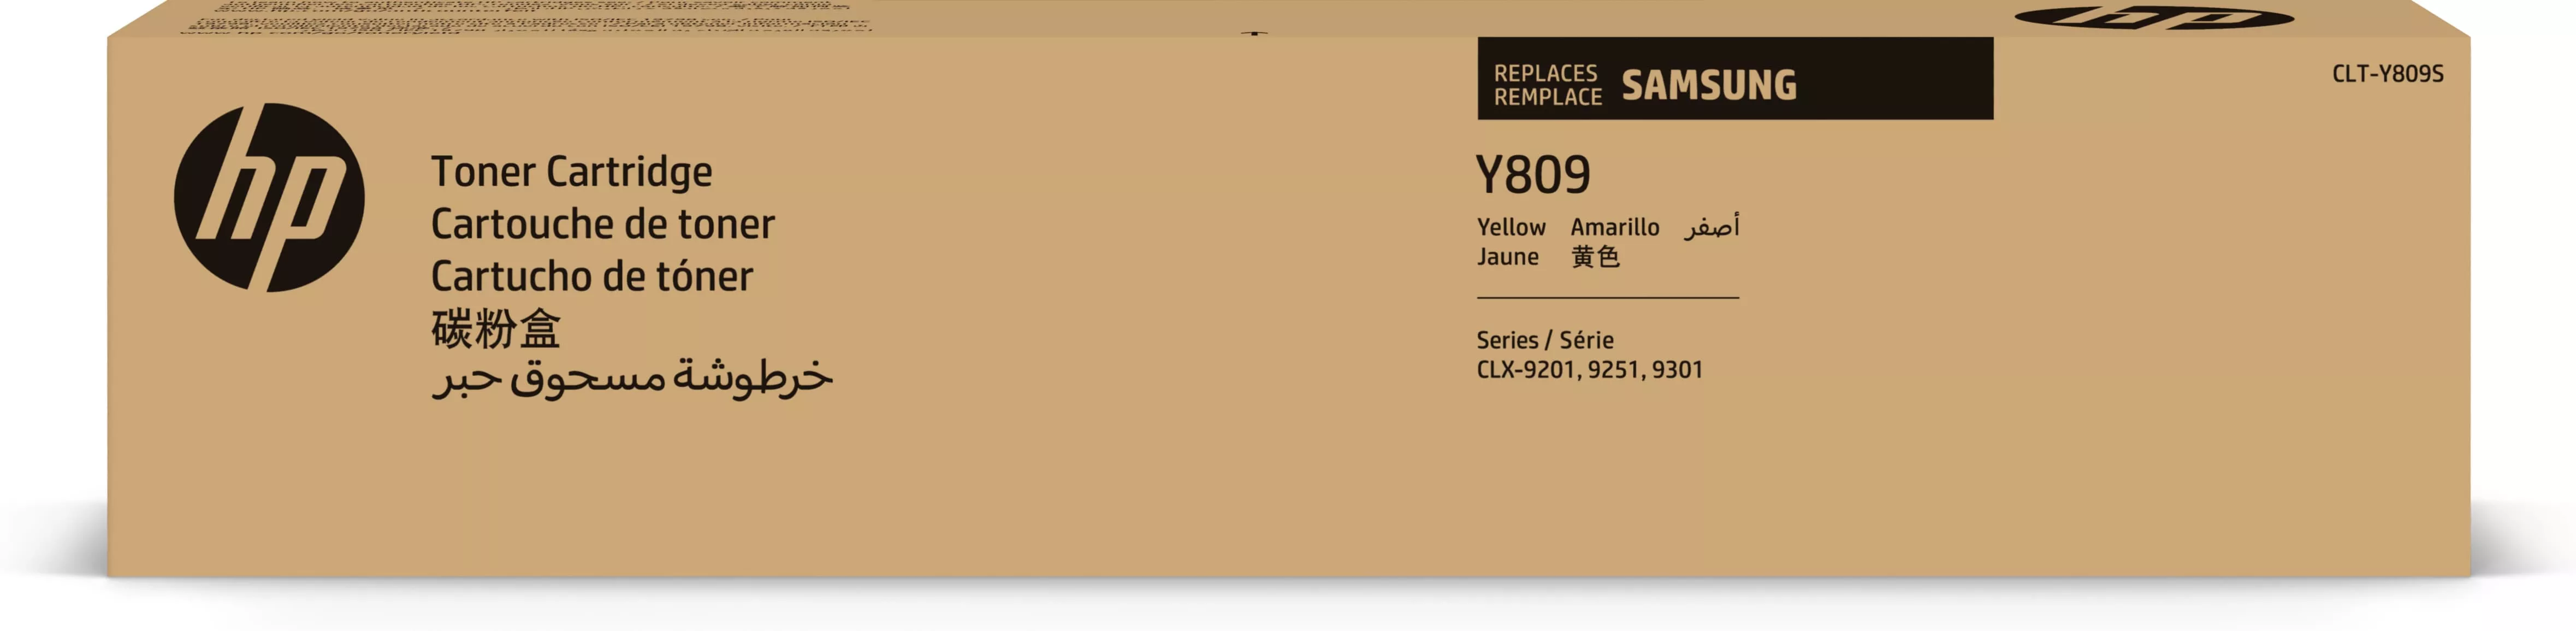 Achat SAMSUNG CLT-Y809S/ELS Yellow Toner Cartridge HP au meilleur prix